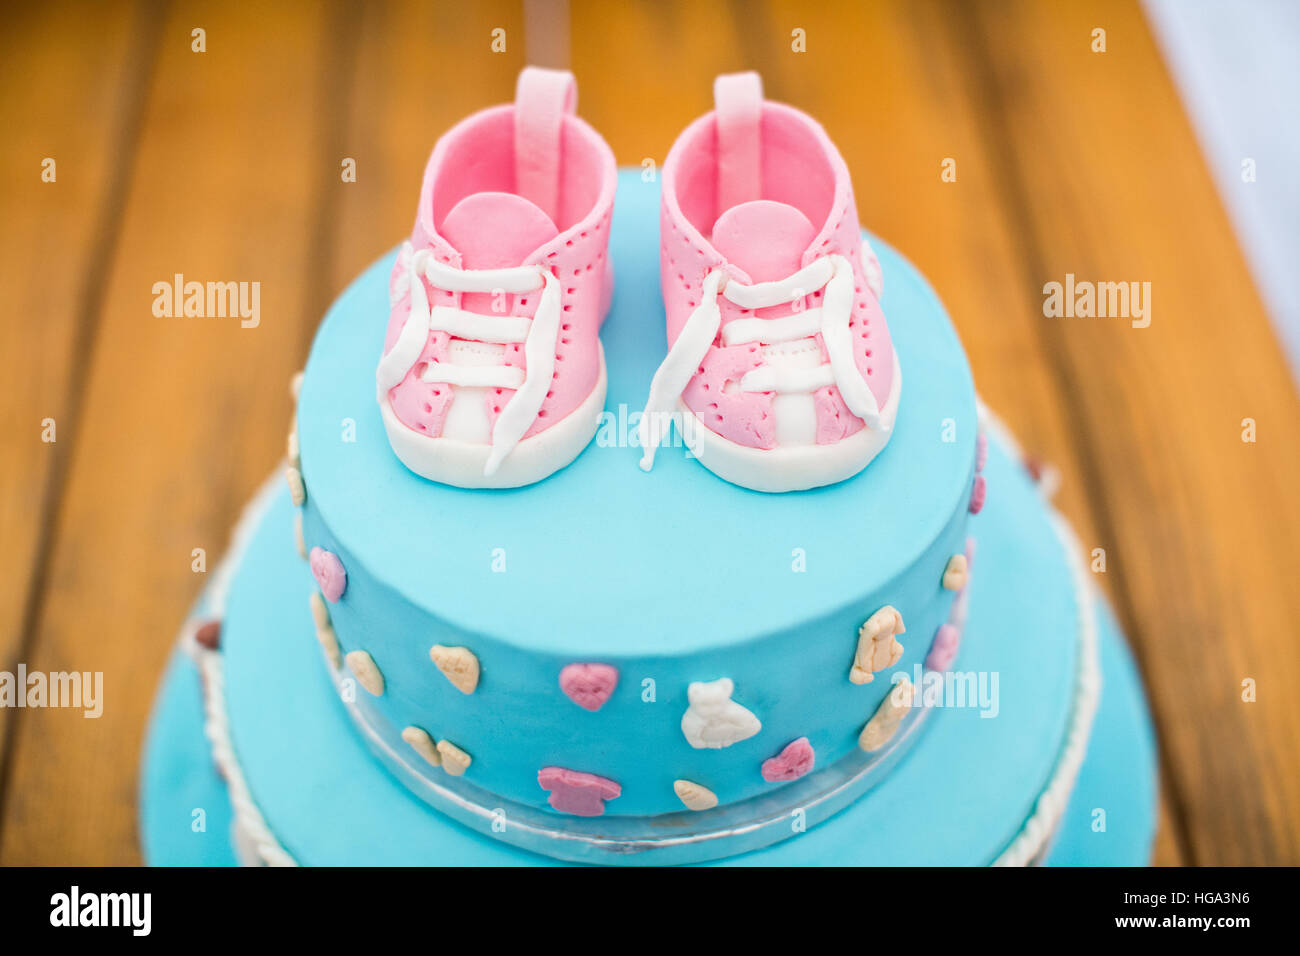 Bambino torta di compleanno. Decorate per bambini. Colore blu con scarpe di colore rosa. Foto Stock